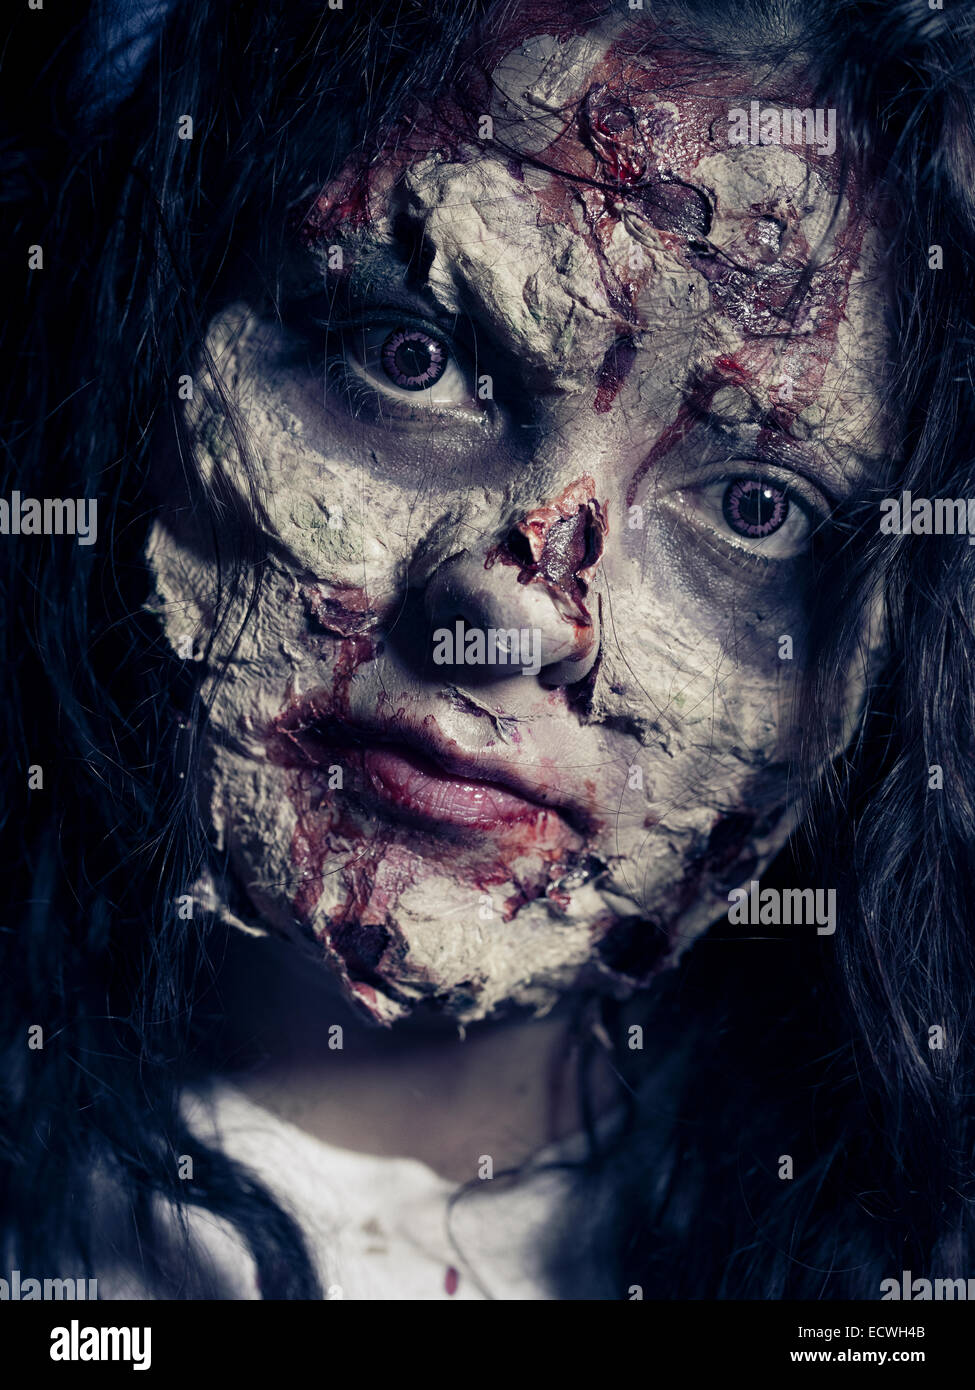 Zombie - costume Halloween avec maquillage effets spéciaux impressionnants. Banque D'Images